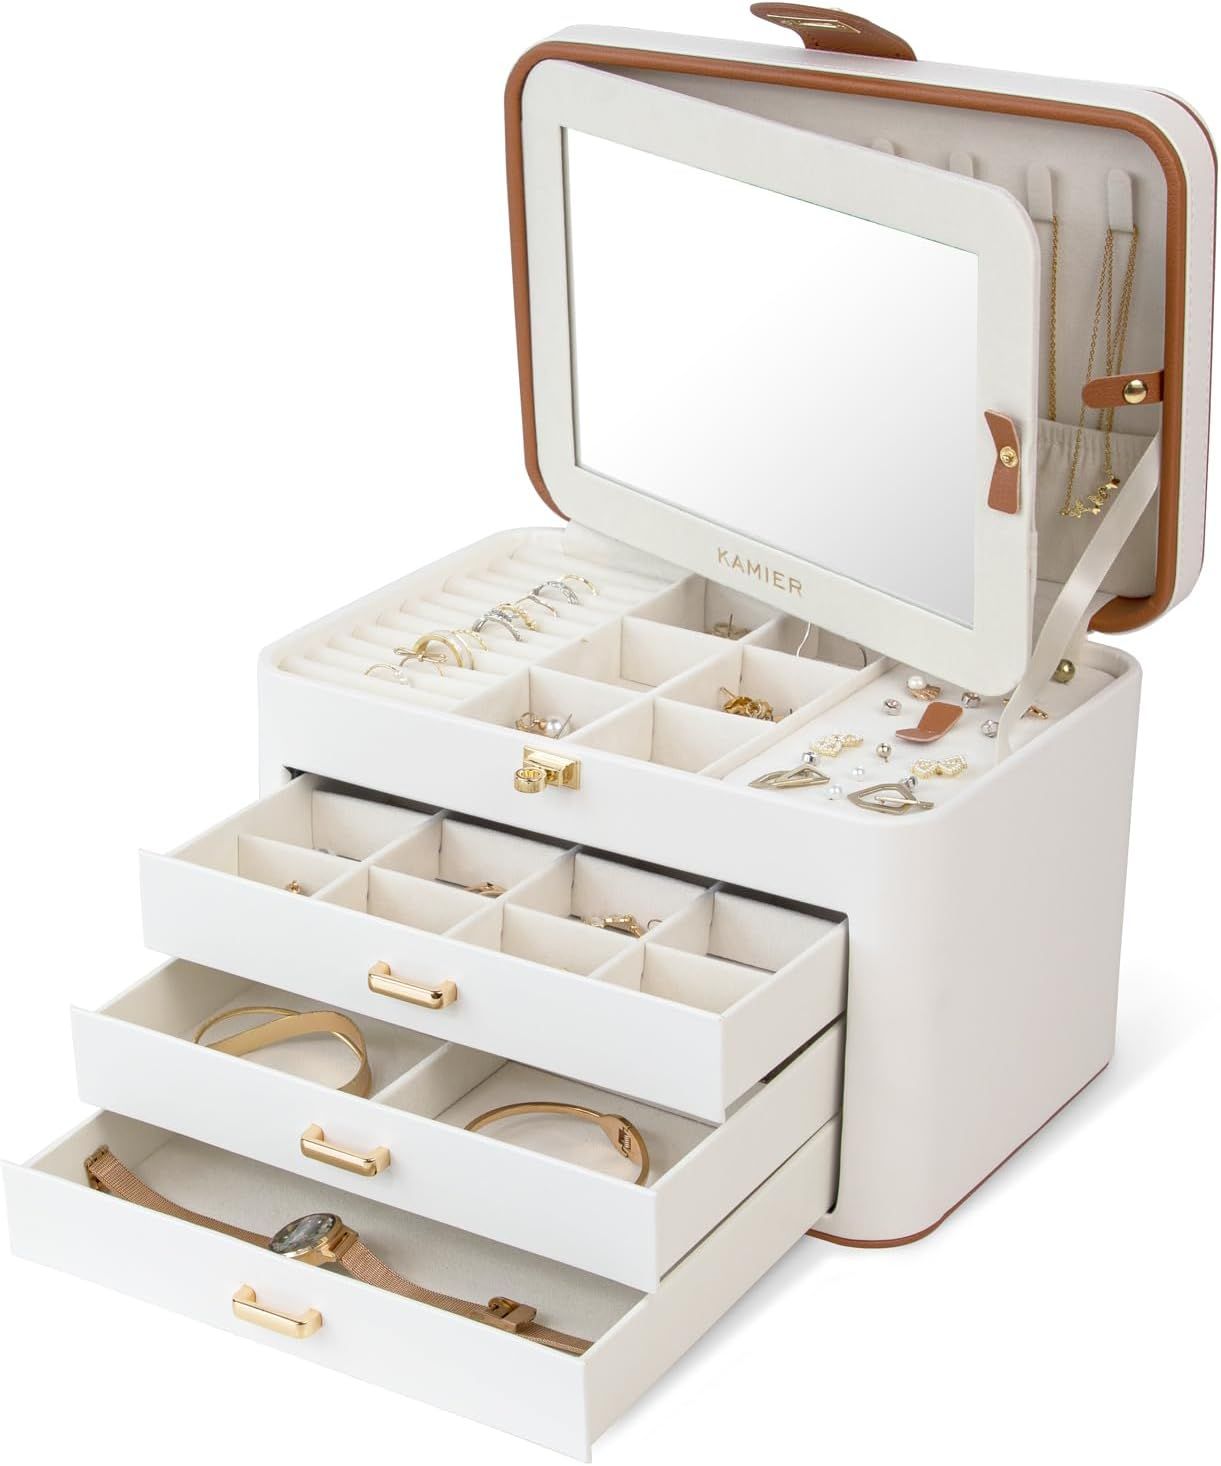 KAMIER Jewelry Organizer Box,4-Layer Jewelry Box for Women with Lock and Mirror, Jewelry Storage ... | Amazon (US)